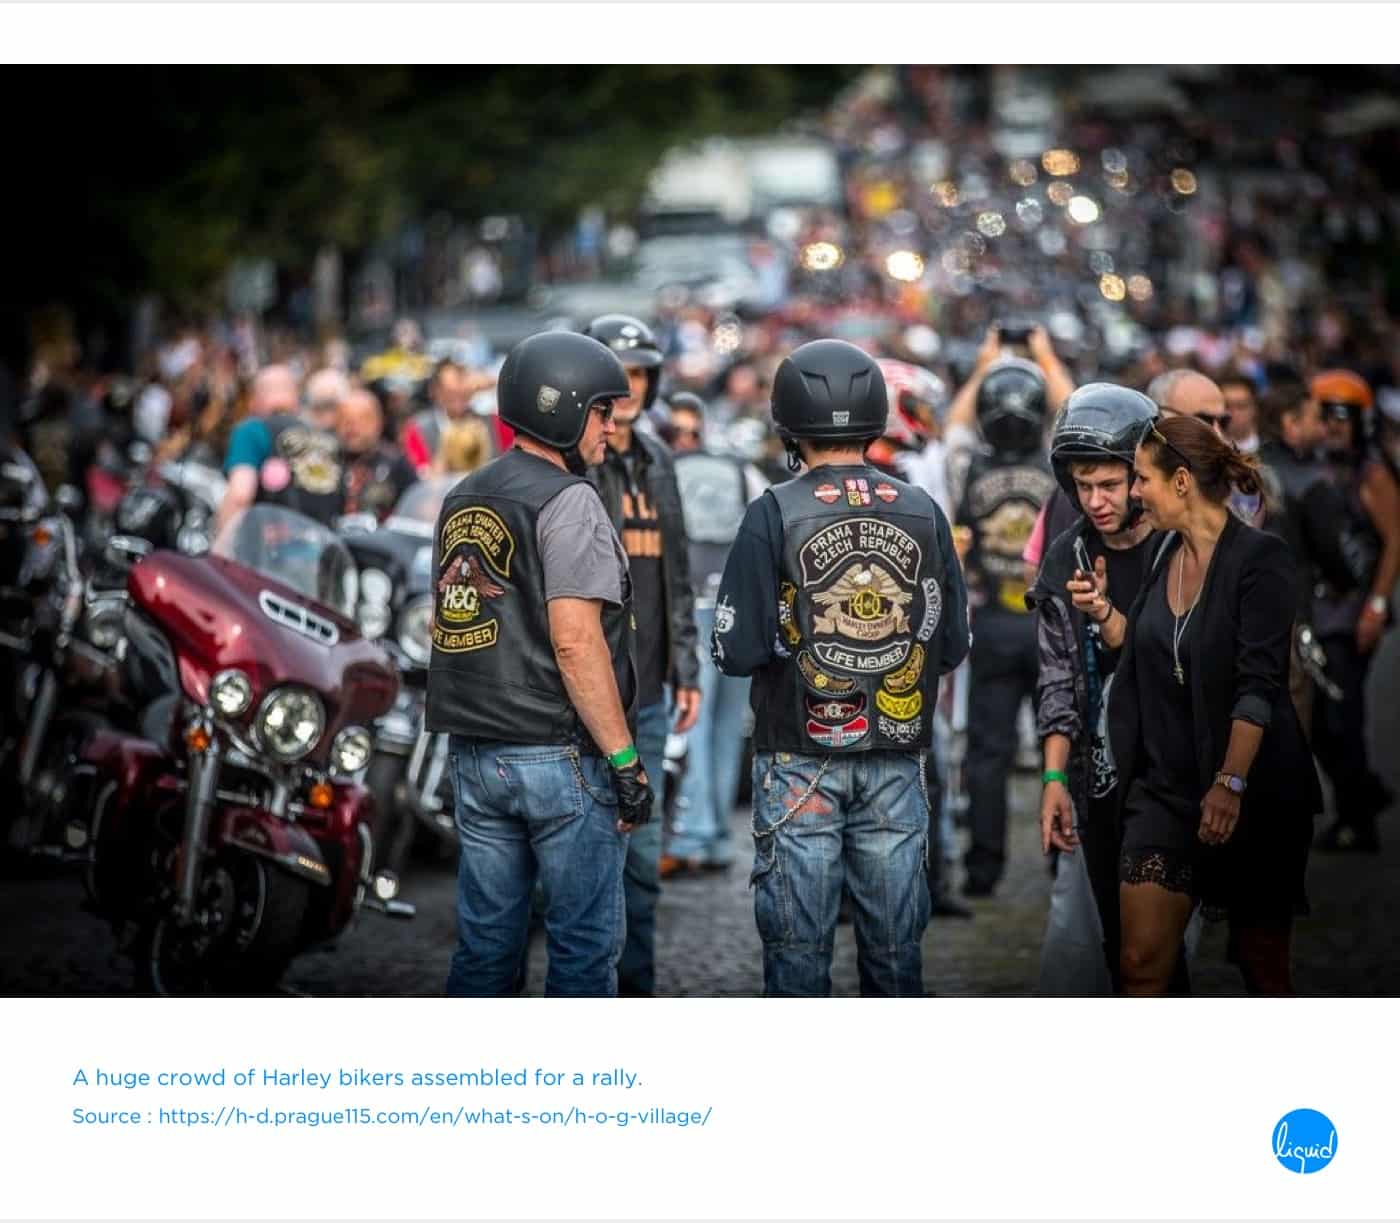 Ejemplo de embajadores de marca: Harley-Davidson